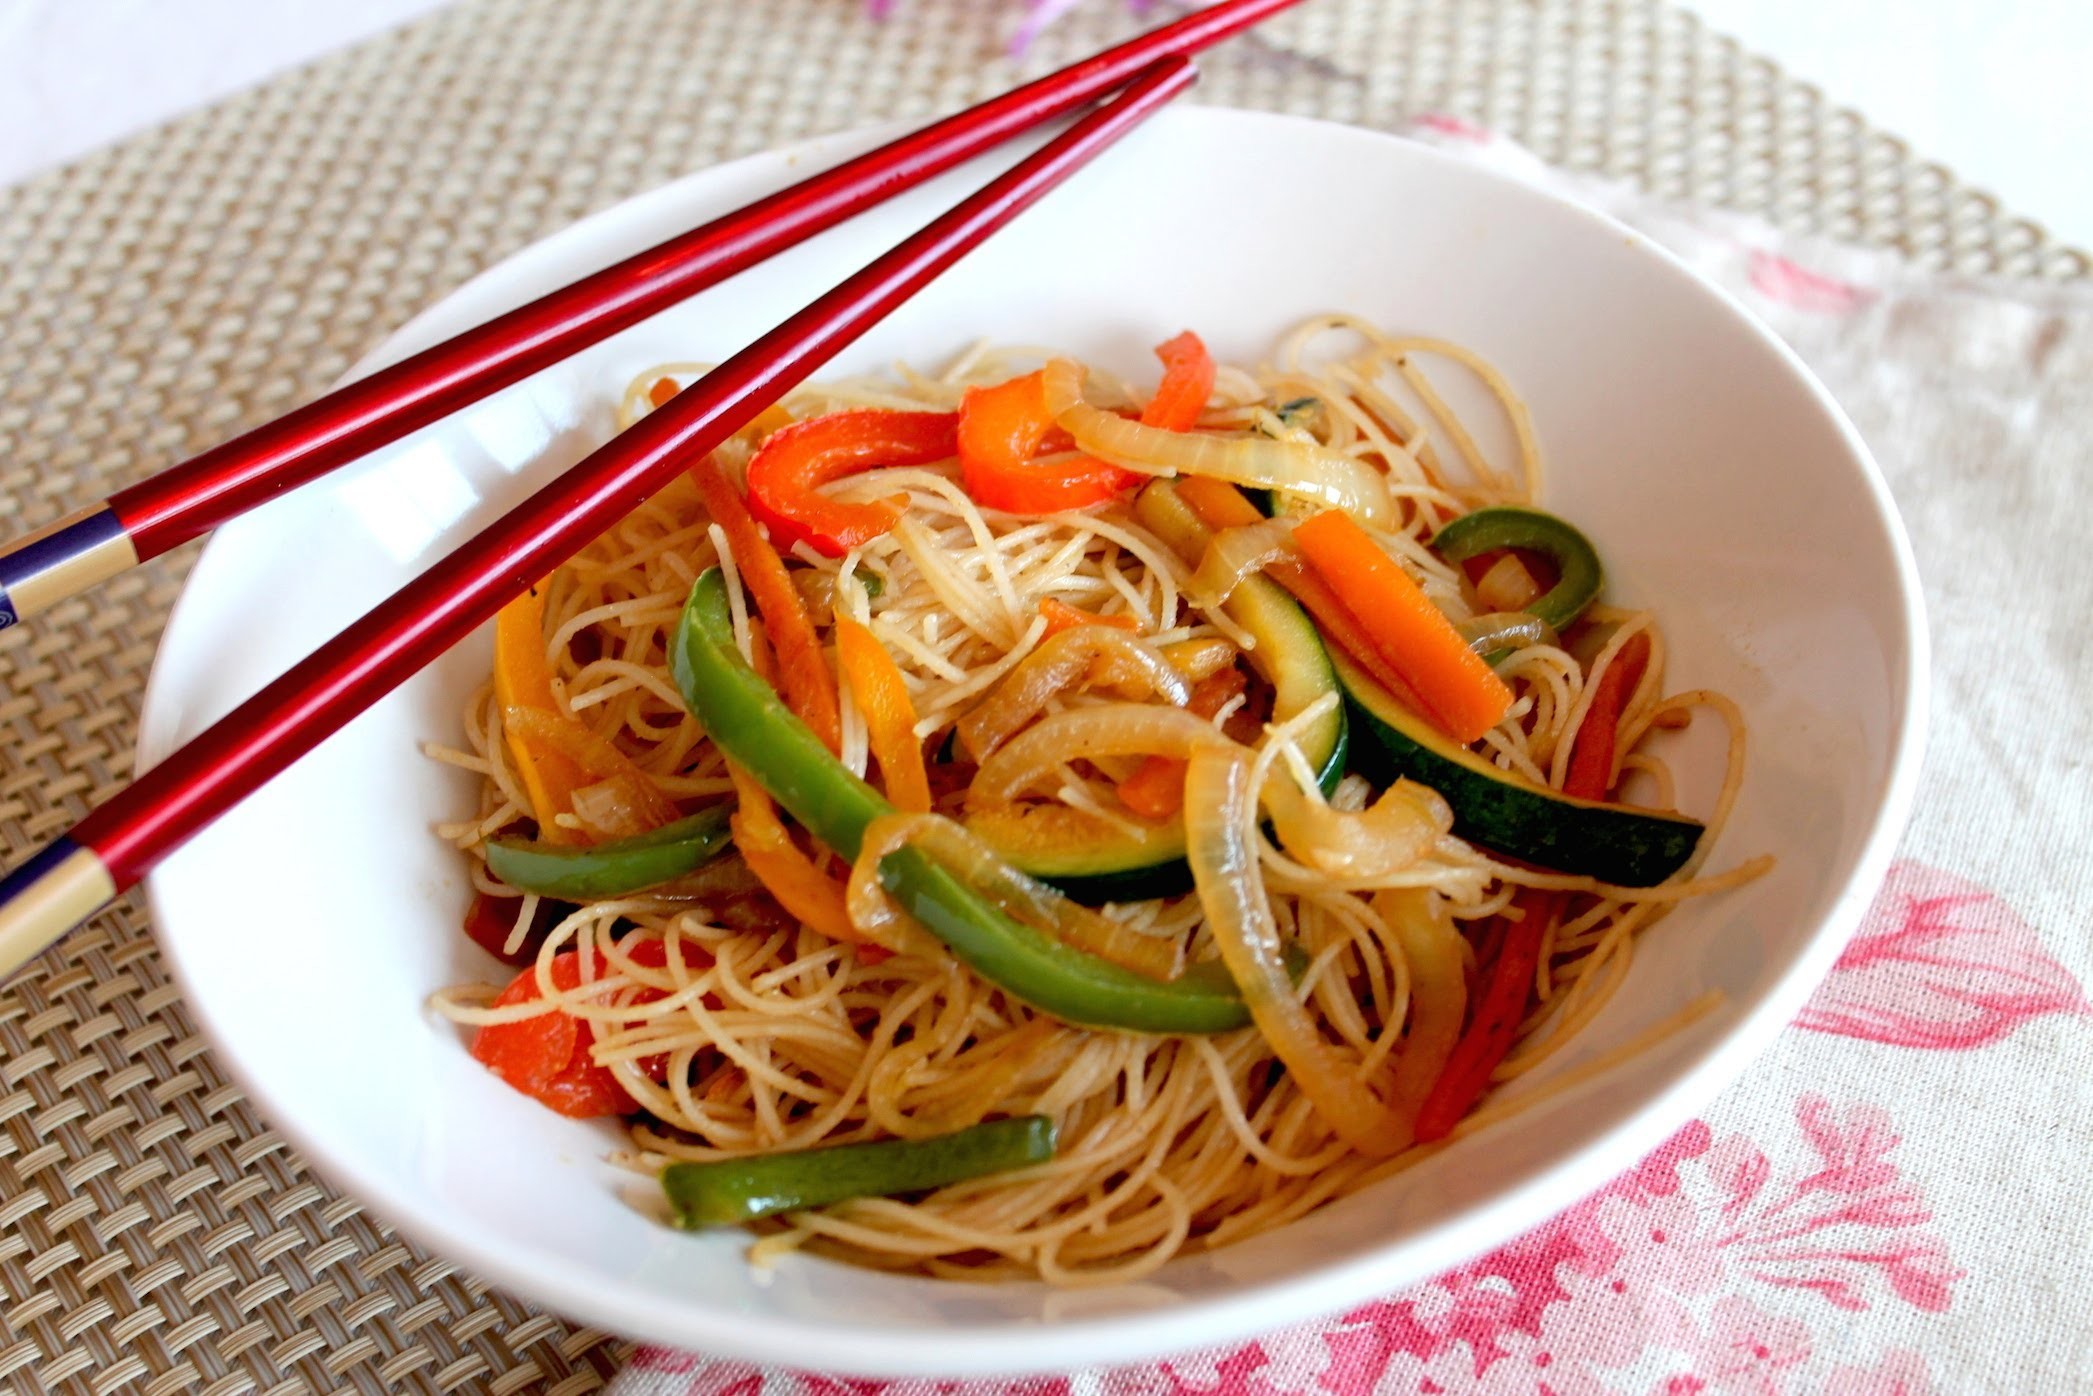 Wok de fideos de arroz chinos con verduras salteadas (Noodles veganos) 